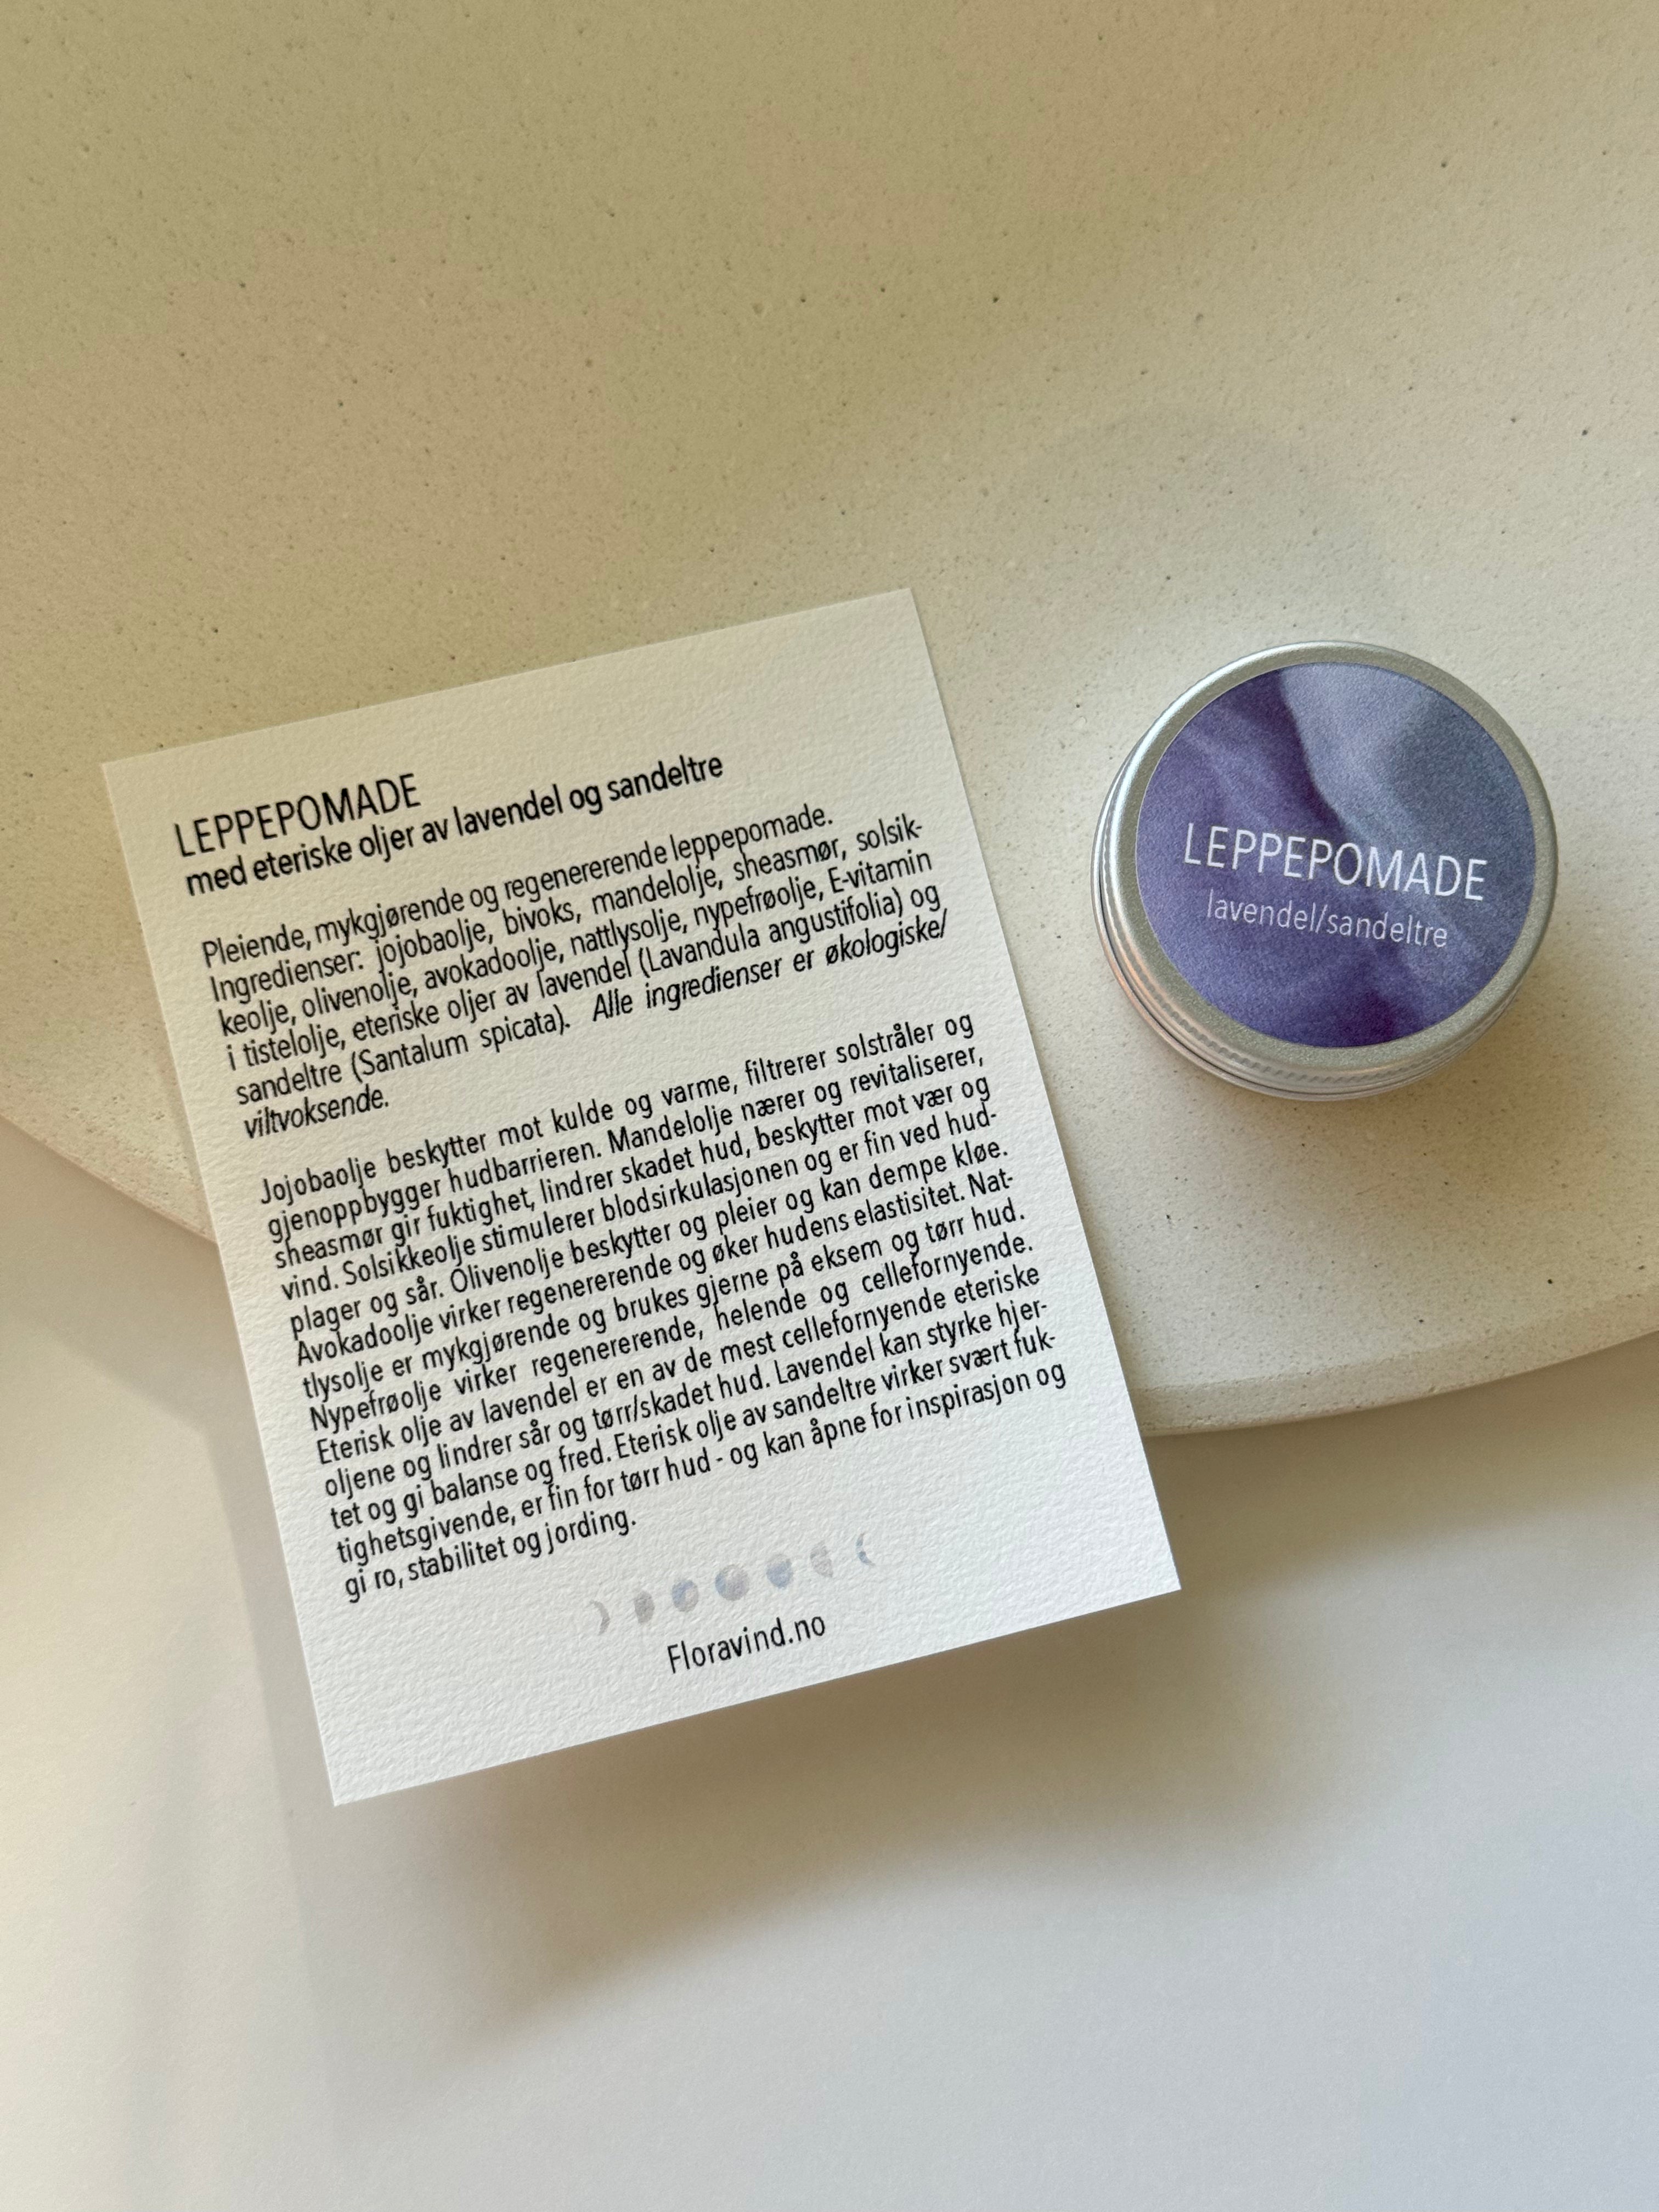 Leppepomade | Lavendel & Sandeltre